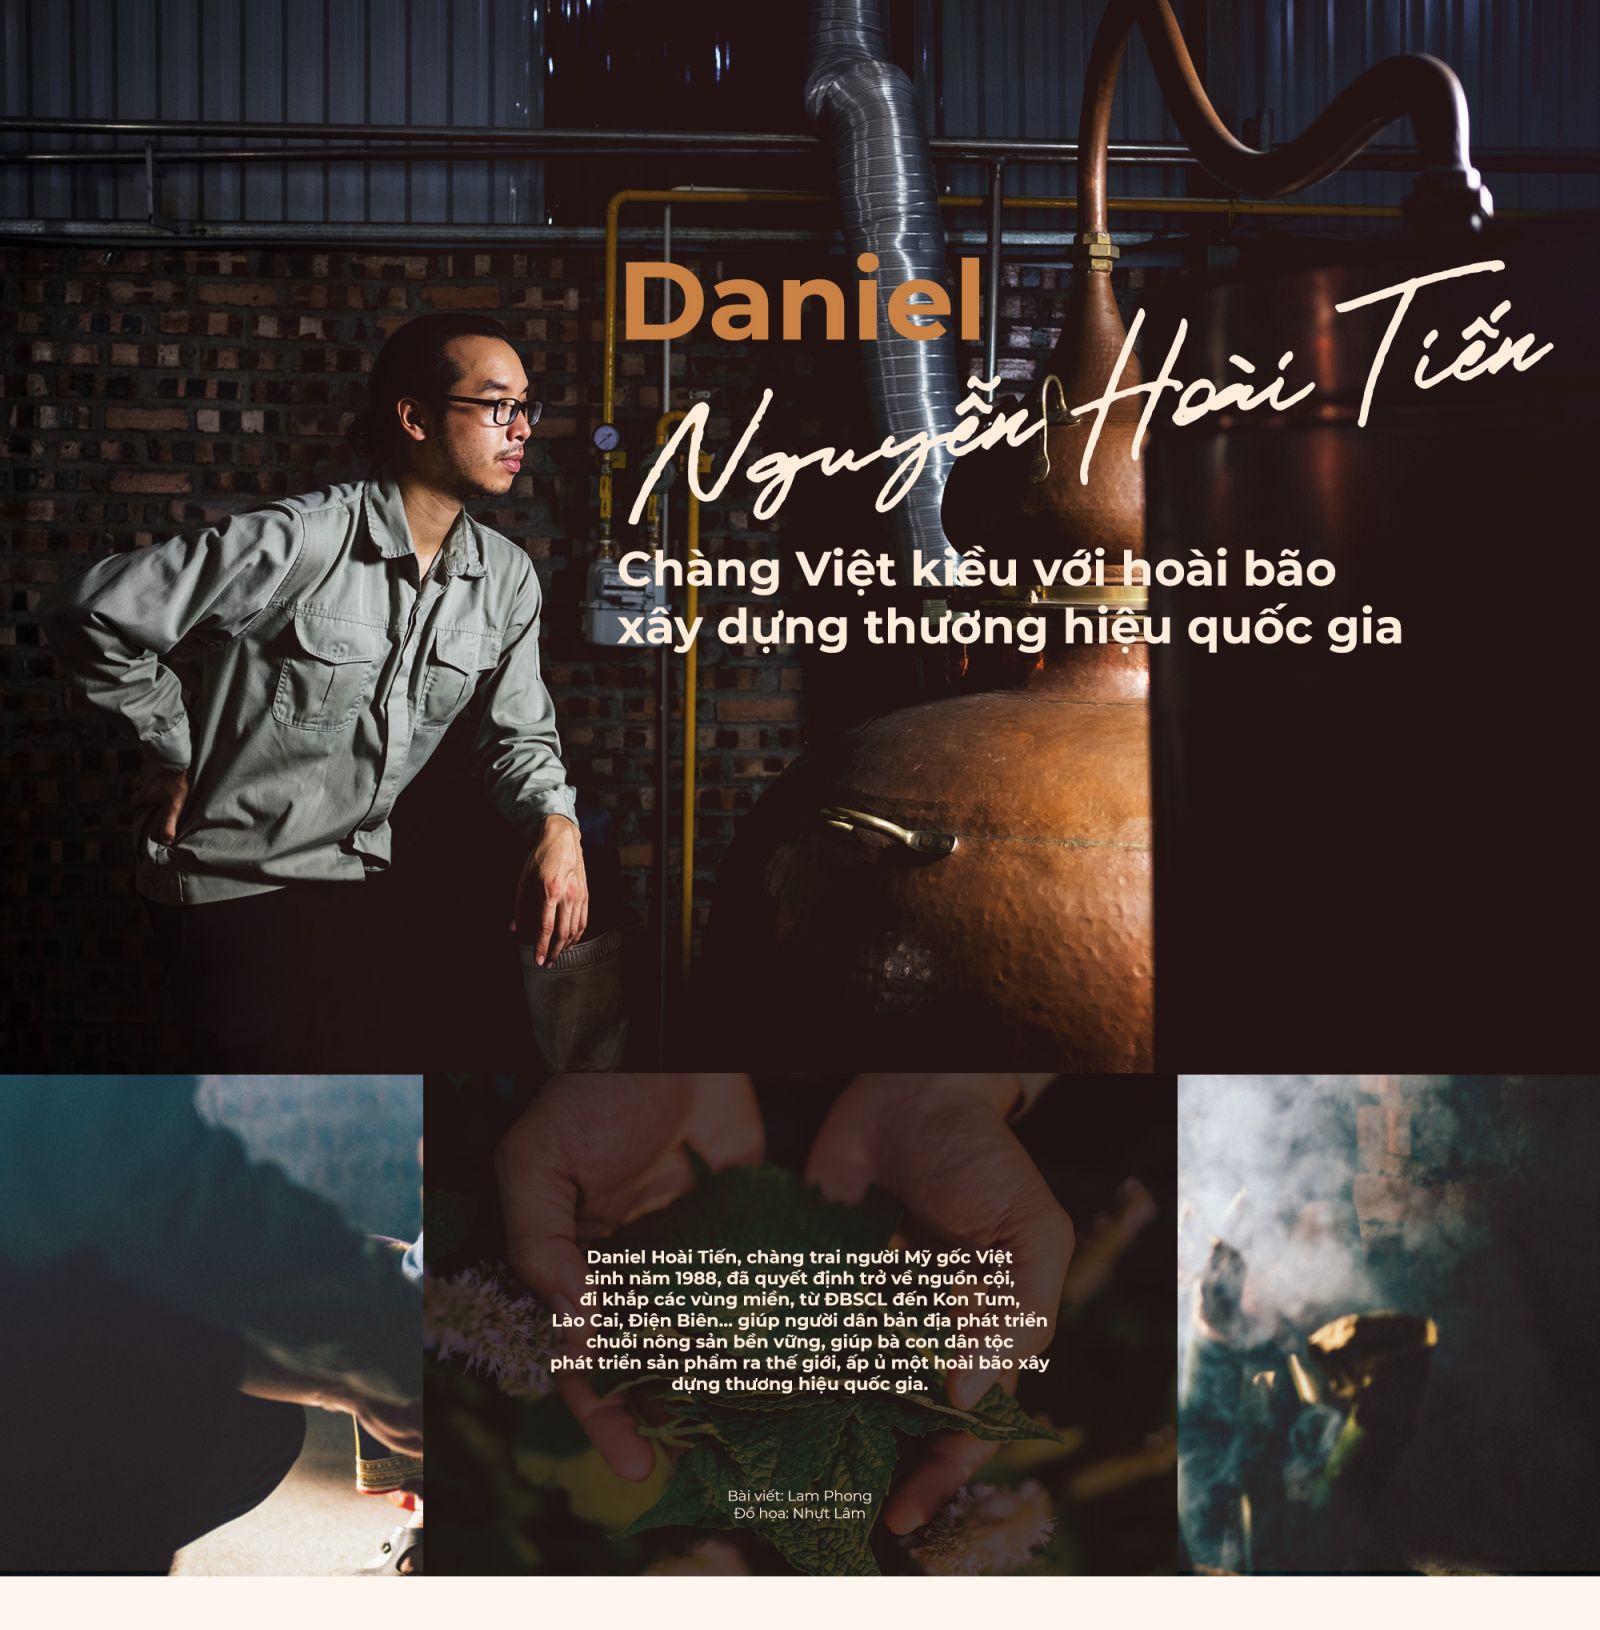 Daniel Nguyễn Hoài Tiến: Chàng Việt kiều với hoài bão xây dựng thương hiệu quốc gia